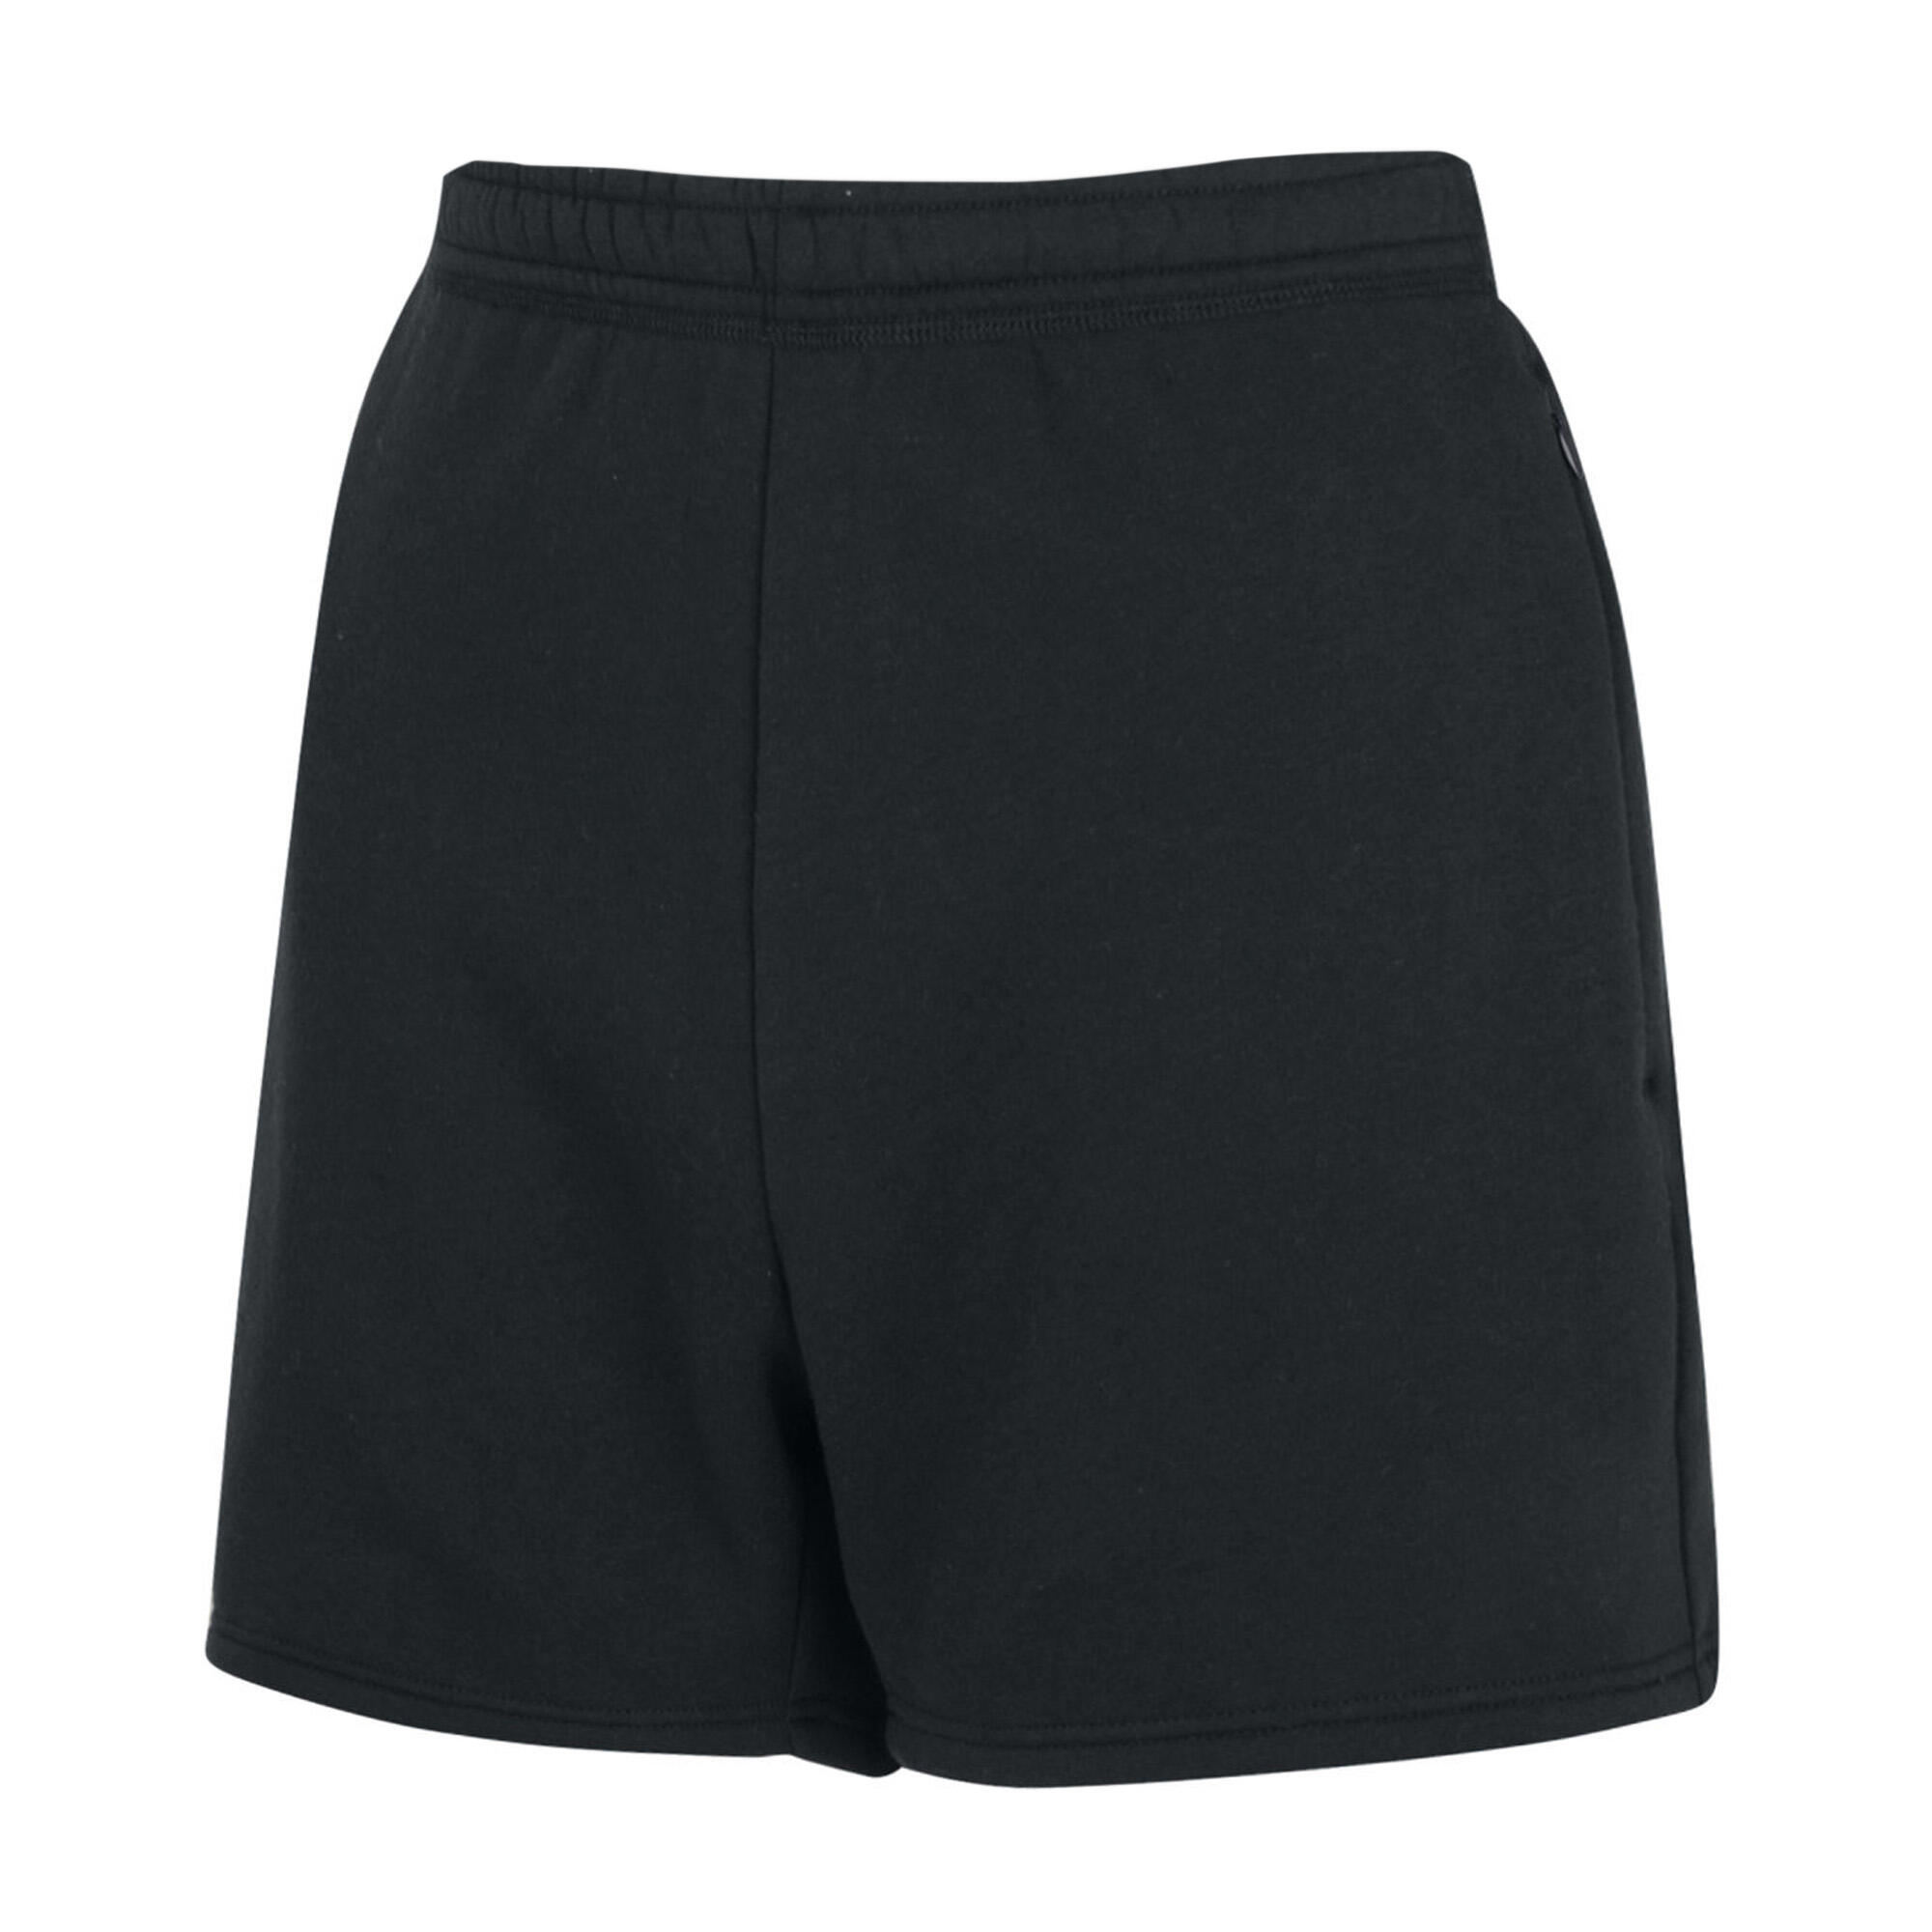 Womens/Ladies Club Leisure Shorts (Black/White) 2/4